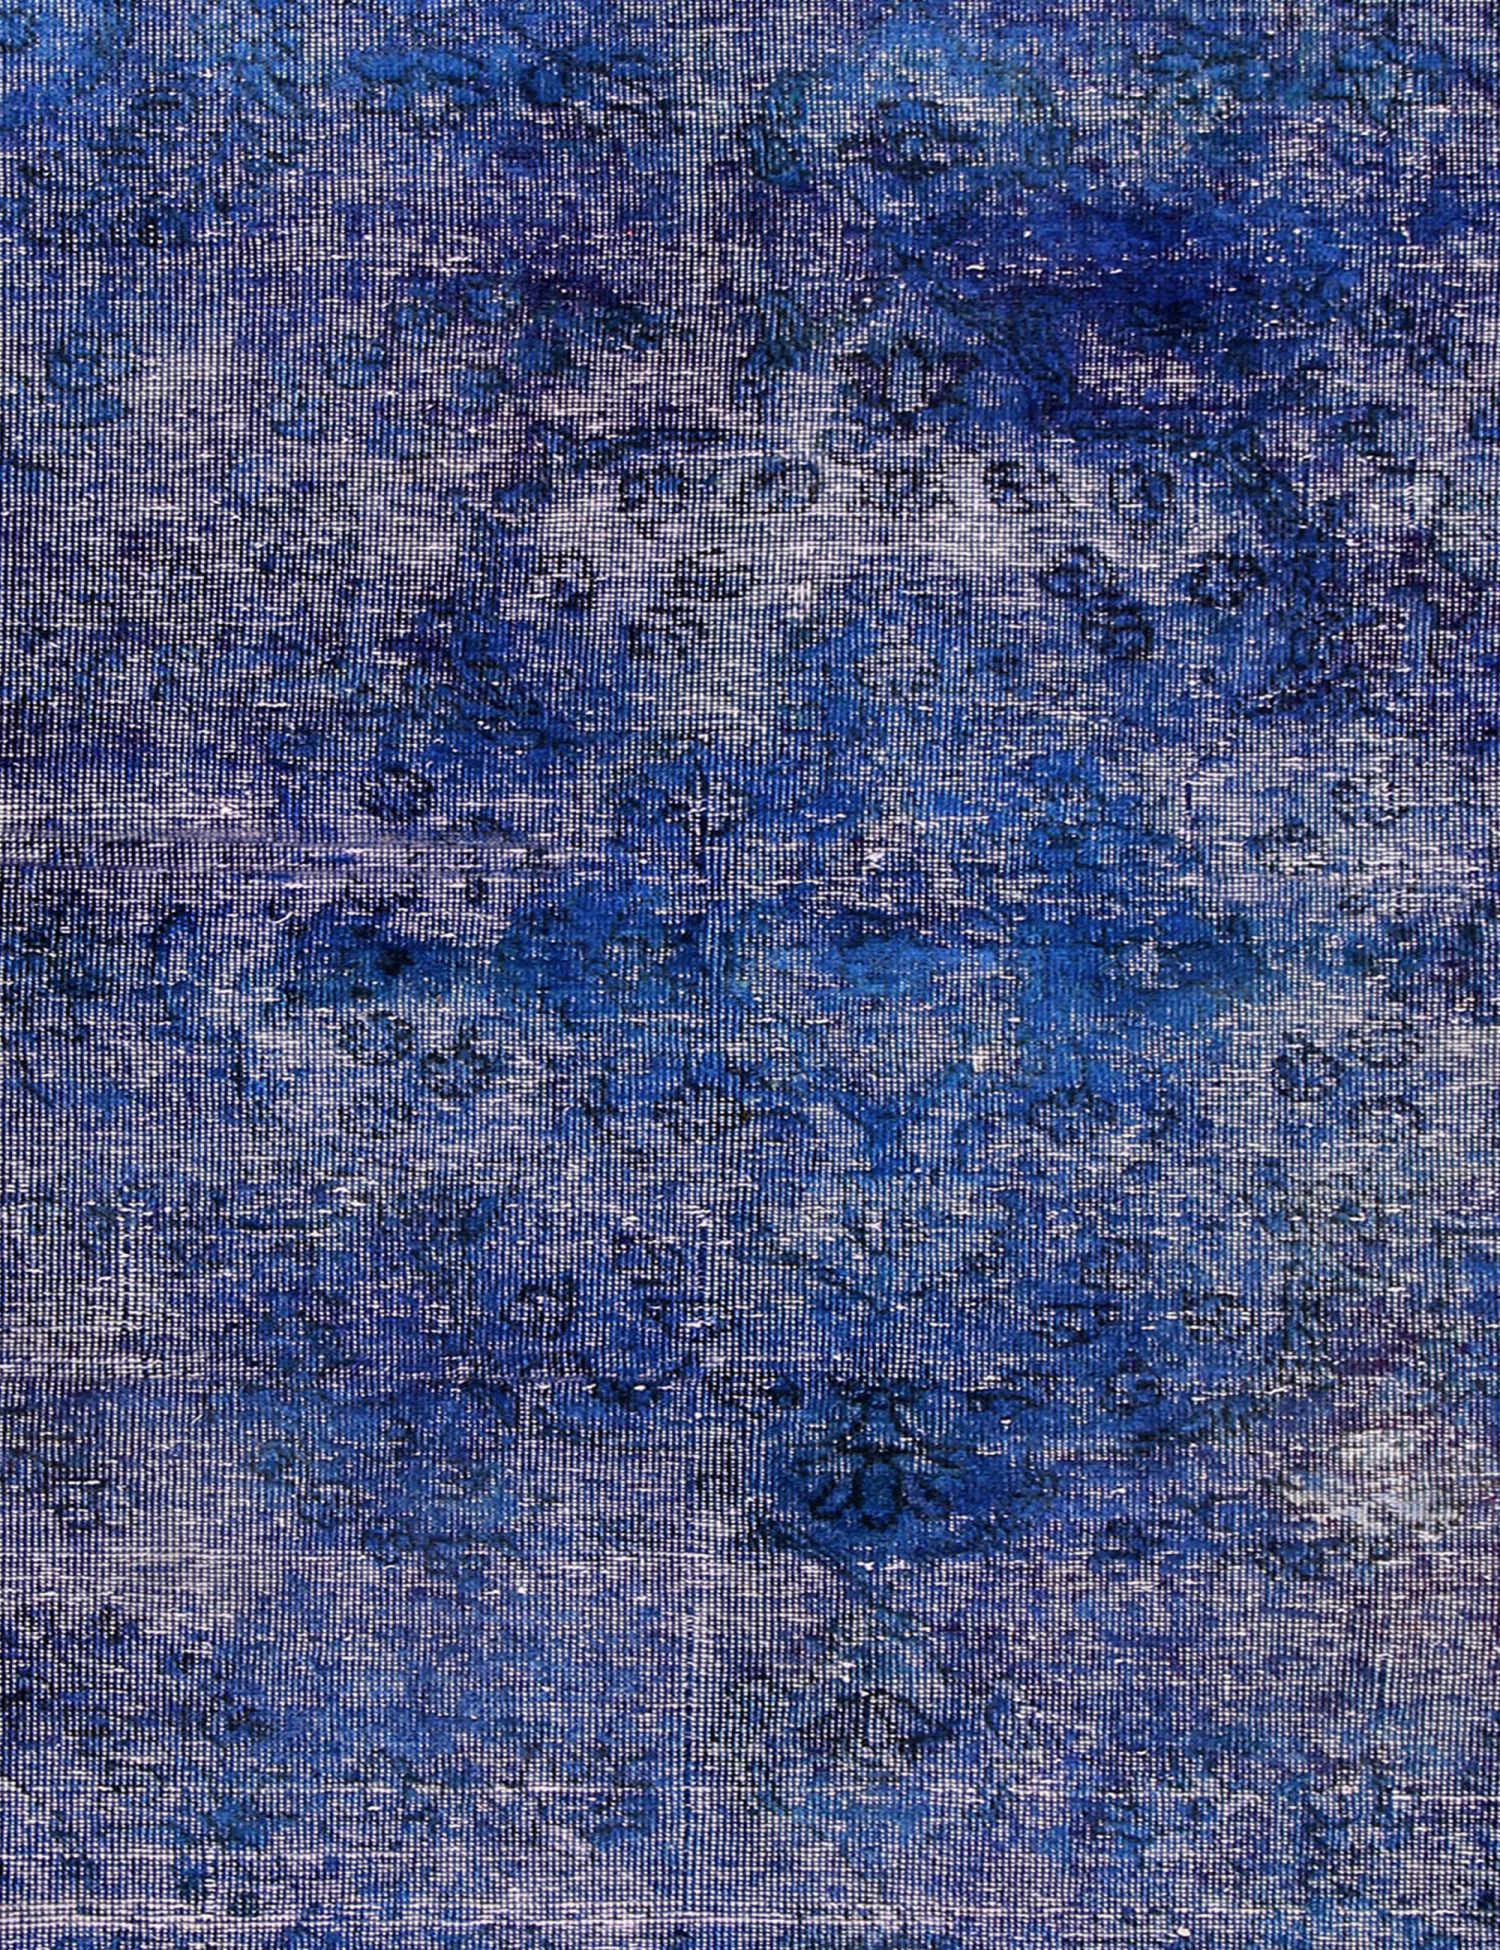 Persischer vintage teppich  blau <br/>205 x 105 cm